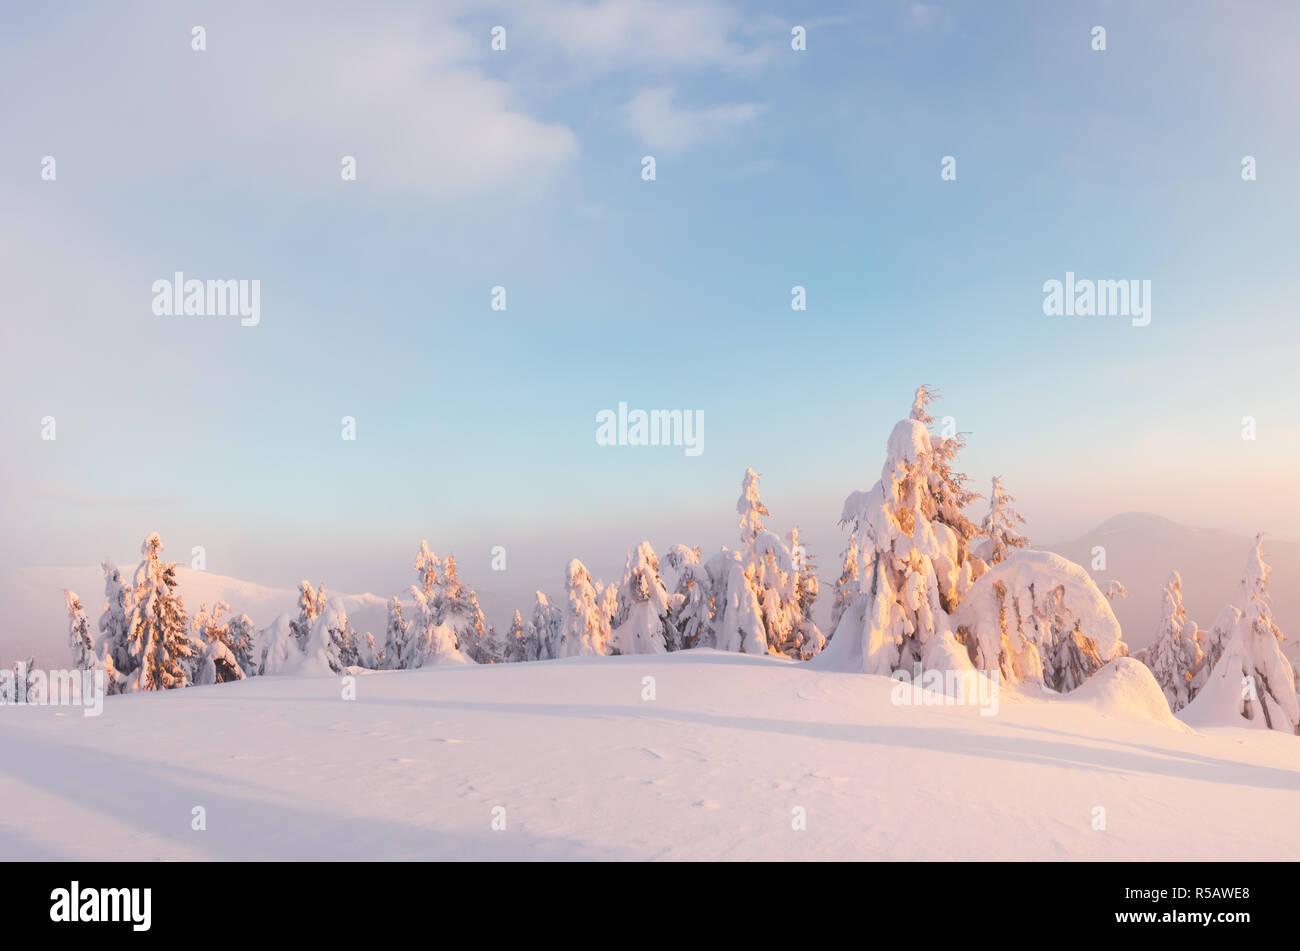 Orange fantastique paysage d'hiver dans les montagnes de neige par la lumière du soleil rougeoyant. Scène hivernale spectaculaire avec des arbres enneigés. Concept de vacances de Noël Banque D'Images